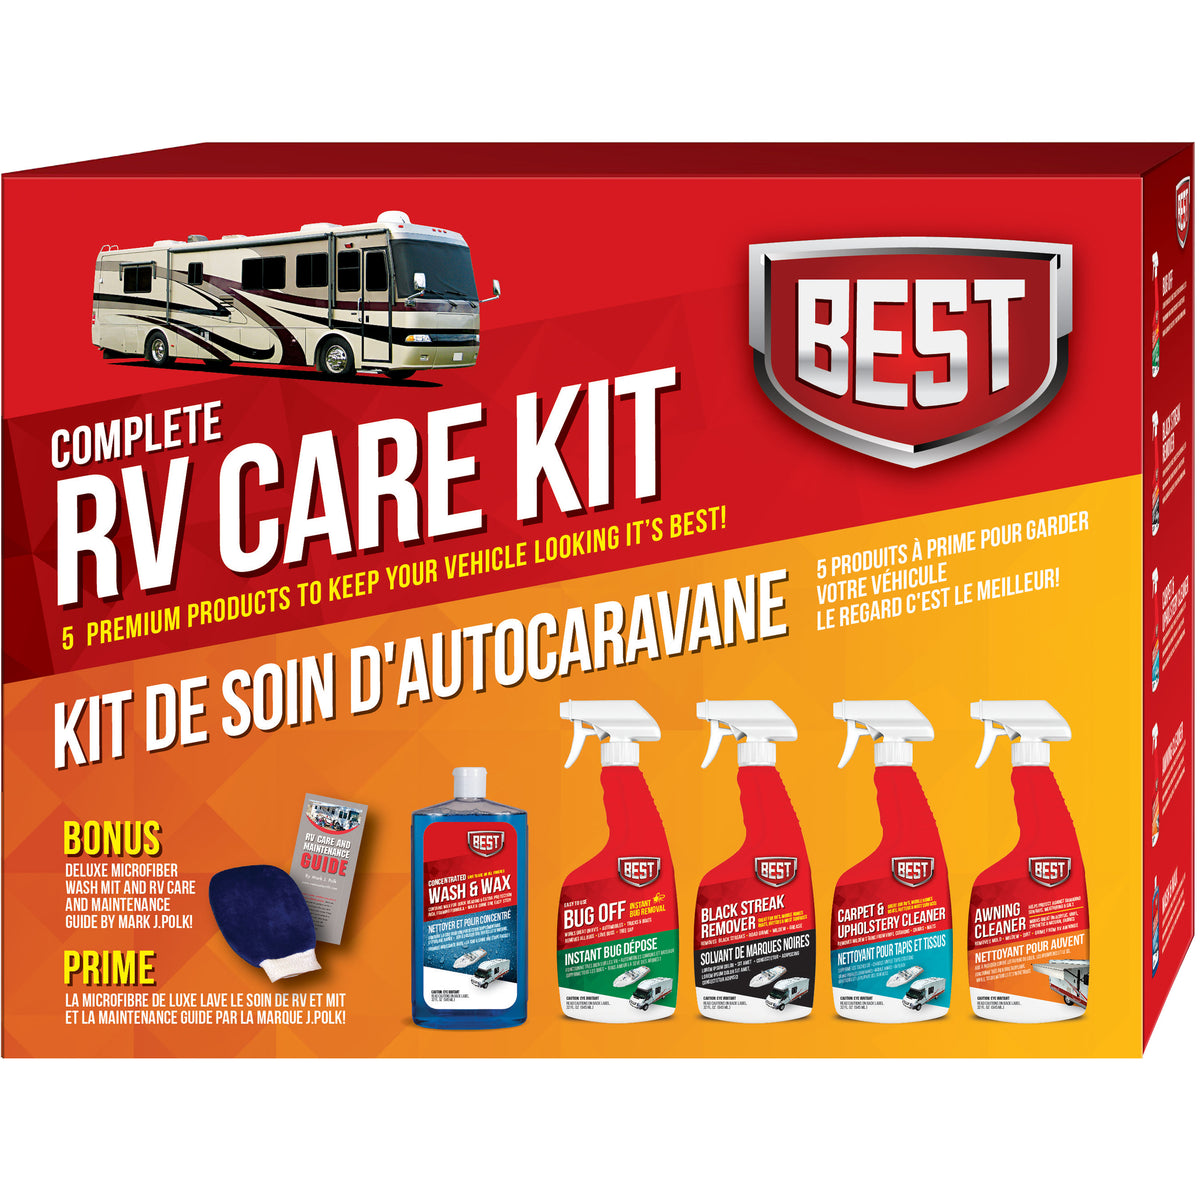 B.E.S.T. 99001 RV Care Kit